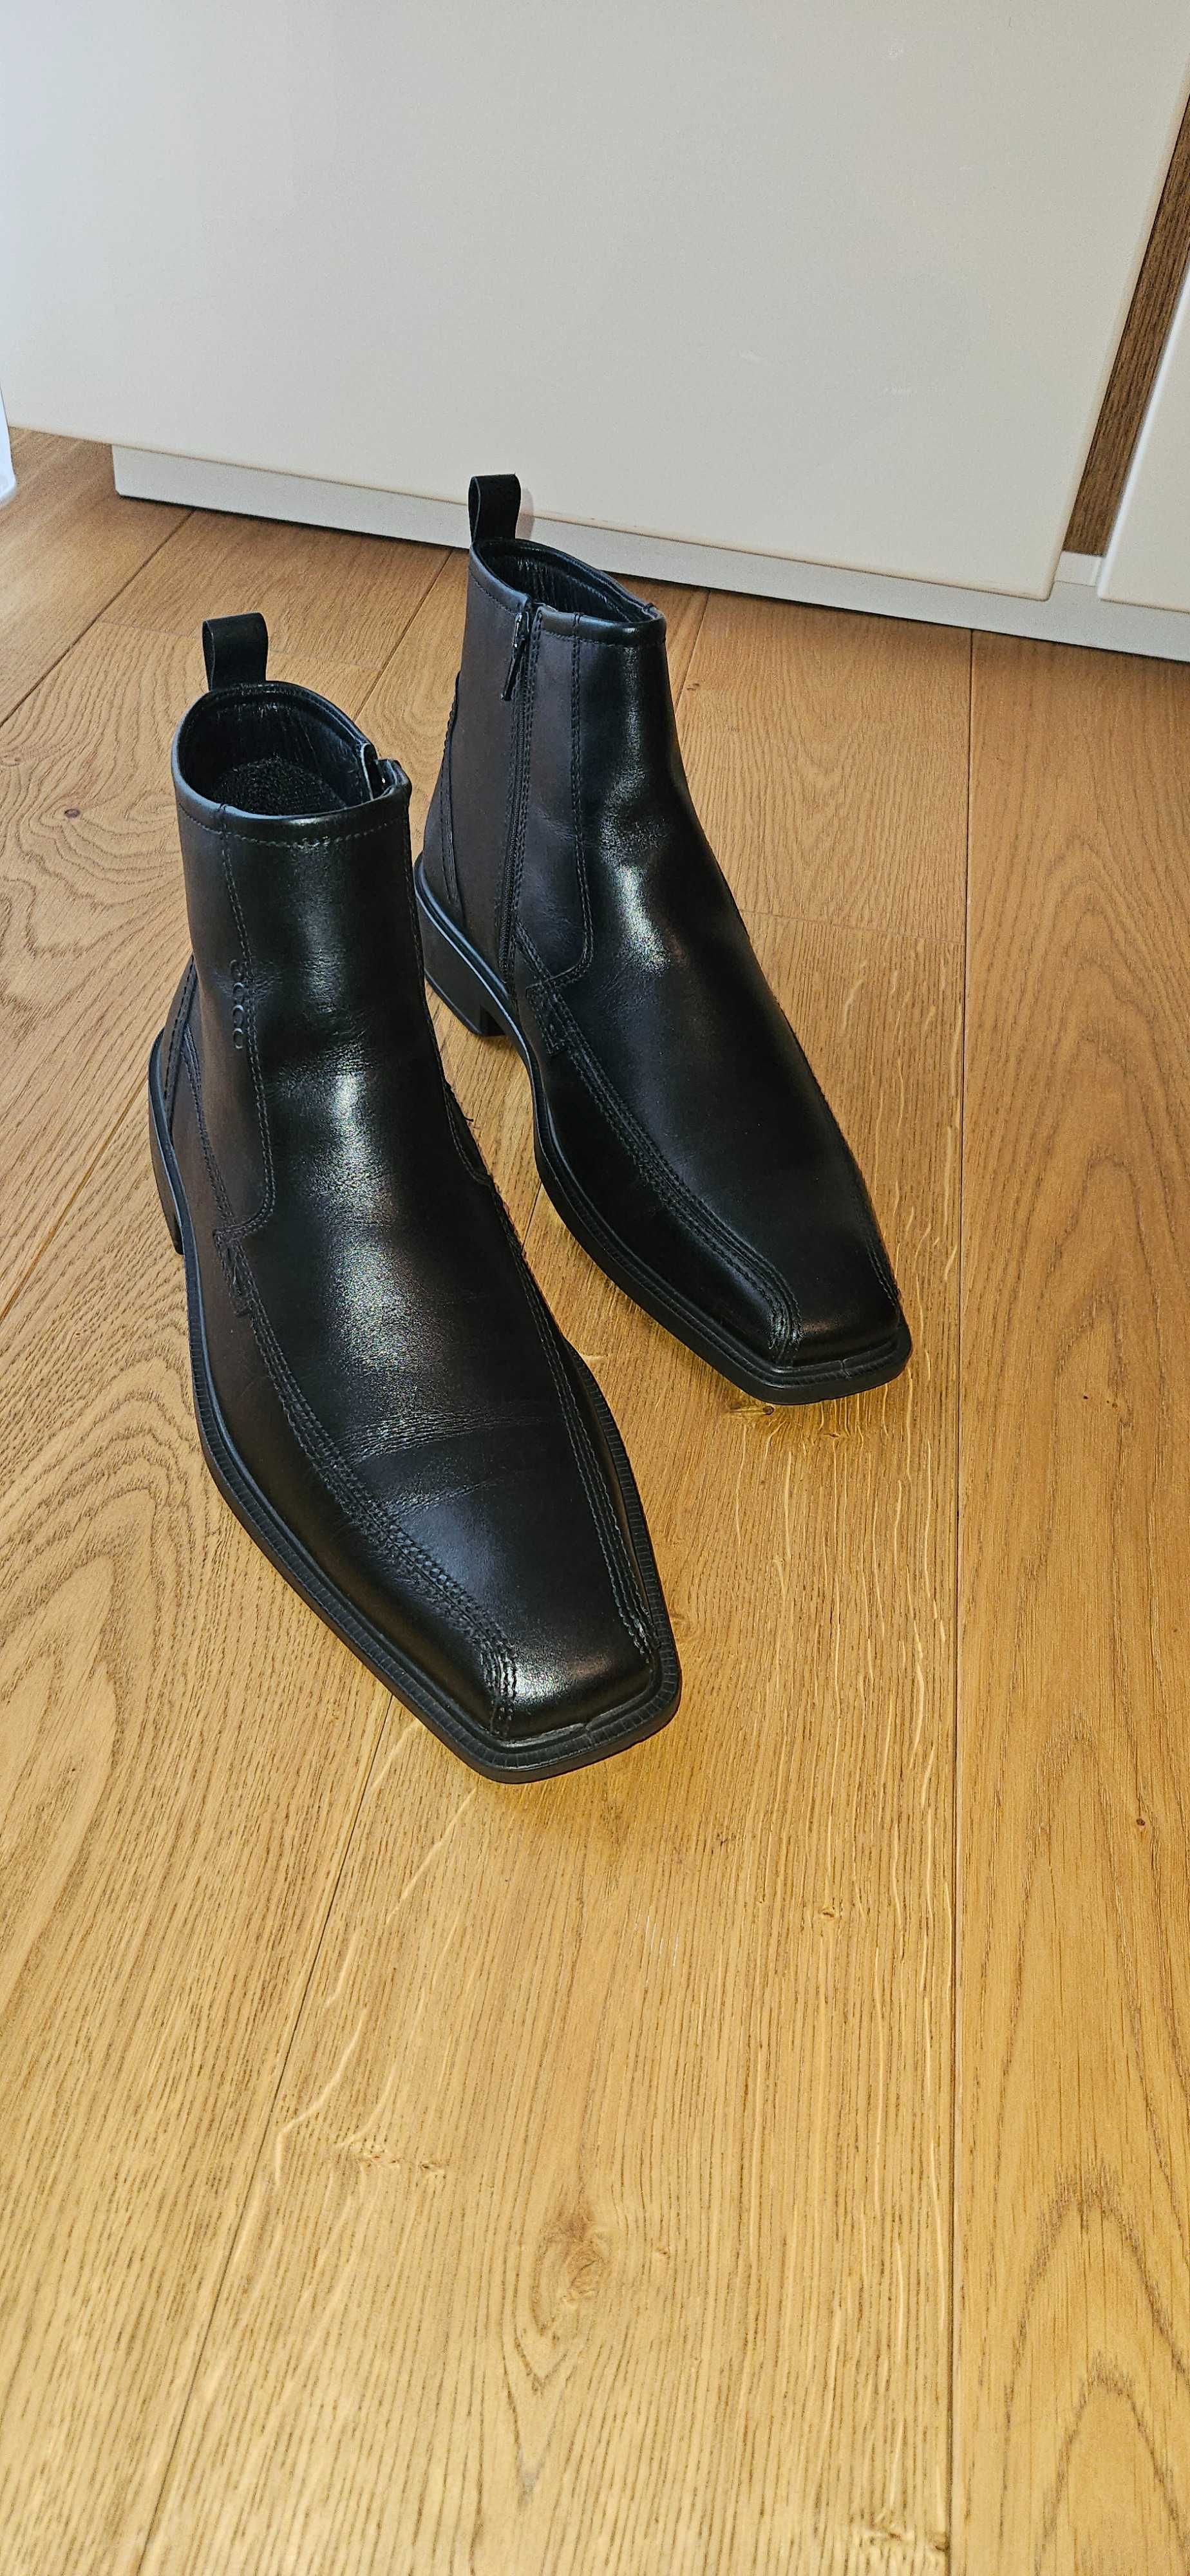 Męskie buty zimowe ECCO w  rozmiarze 43 - NOWE